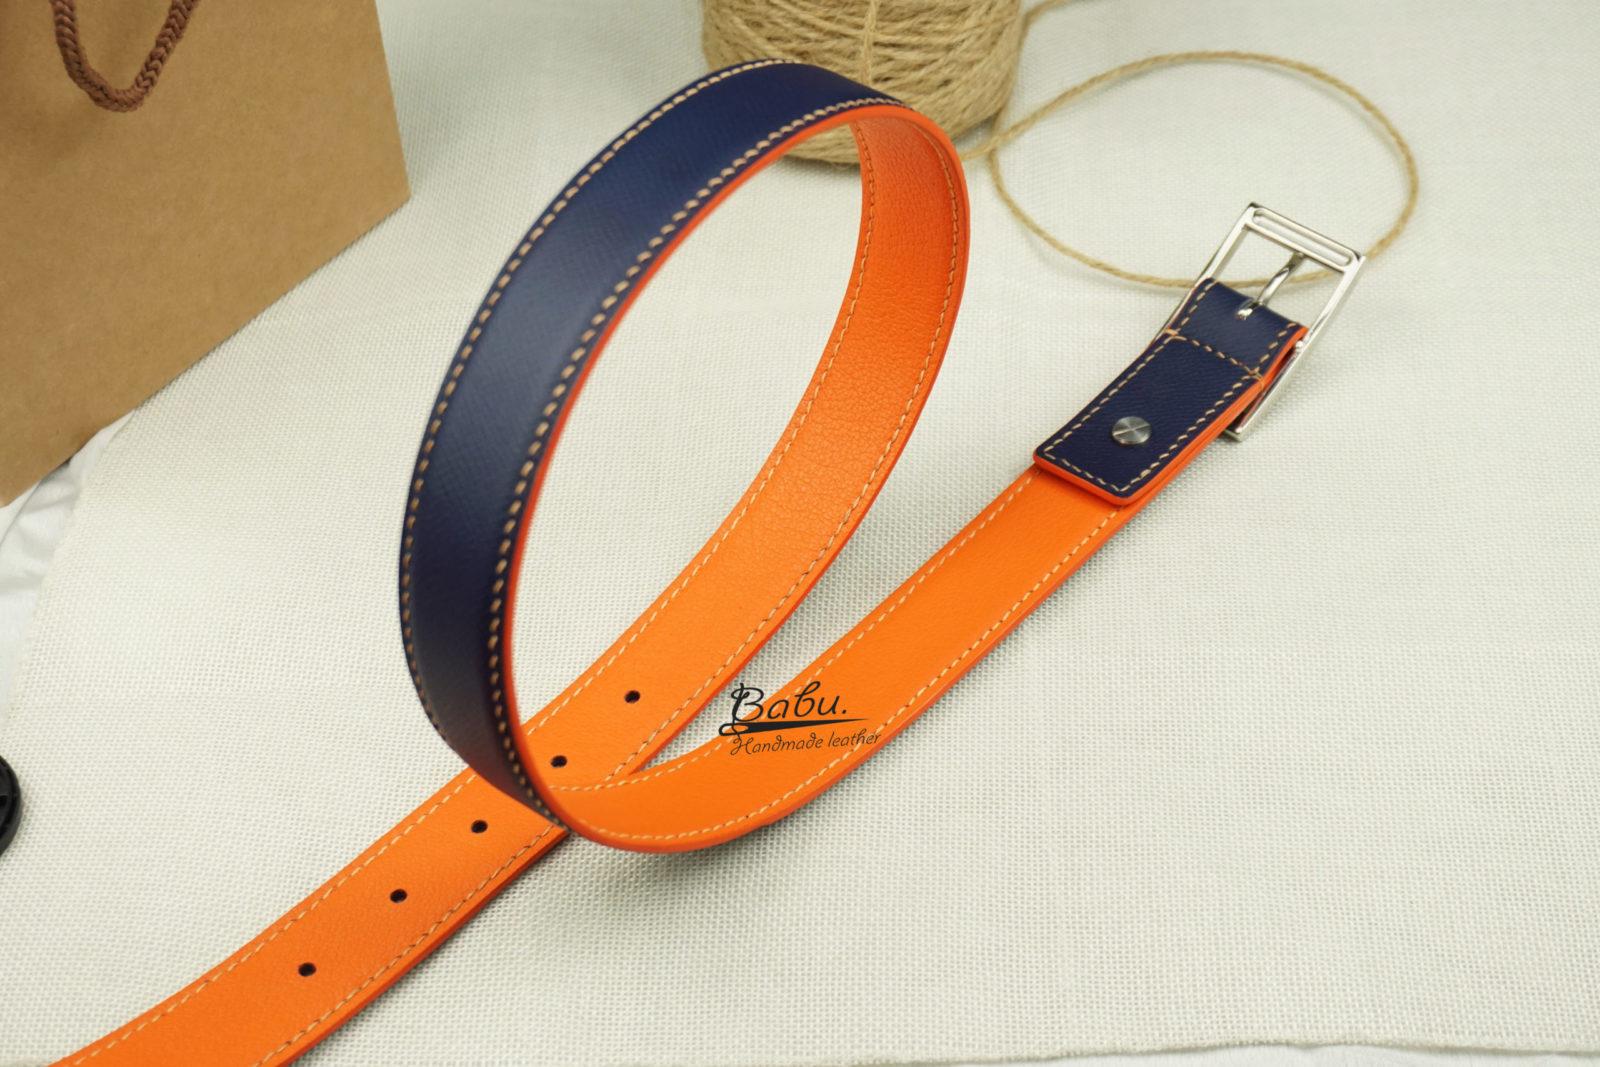 Handmade Navy Blue Epsom Leather Belt LB060